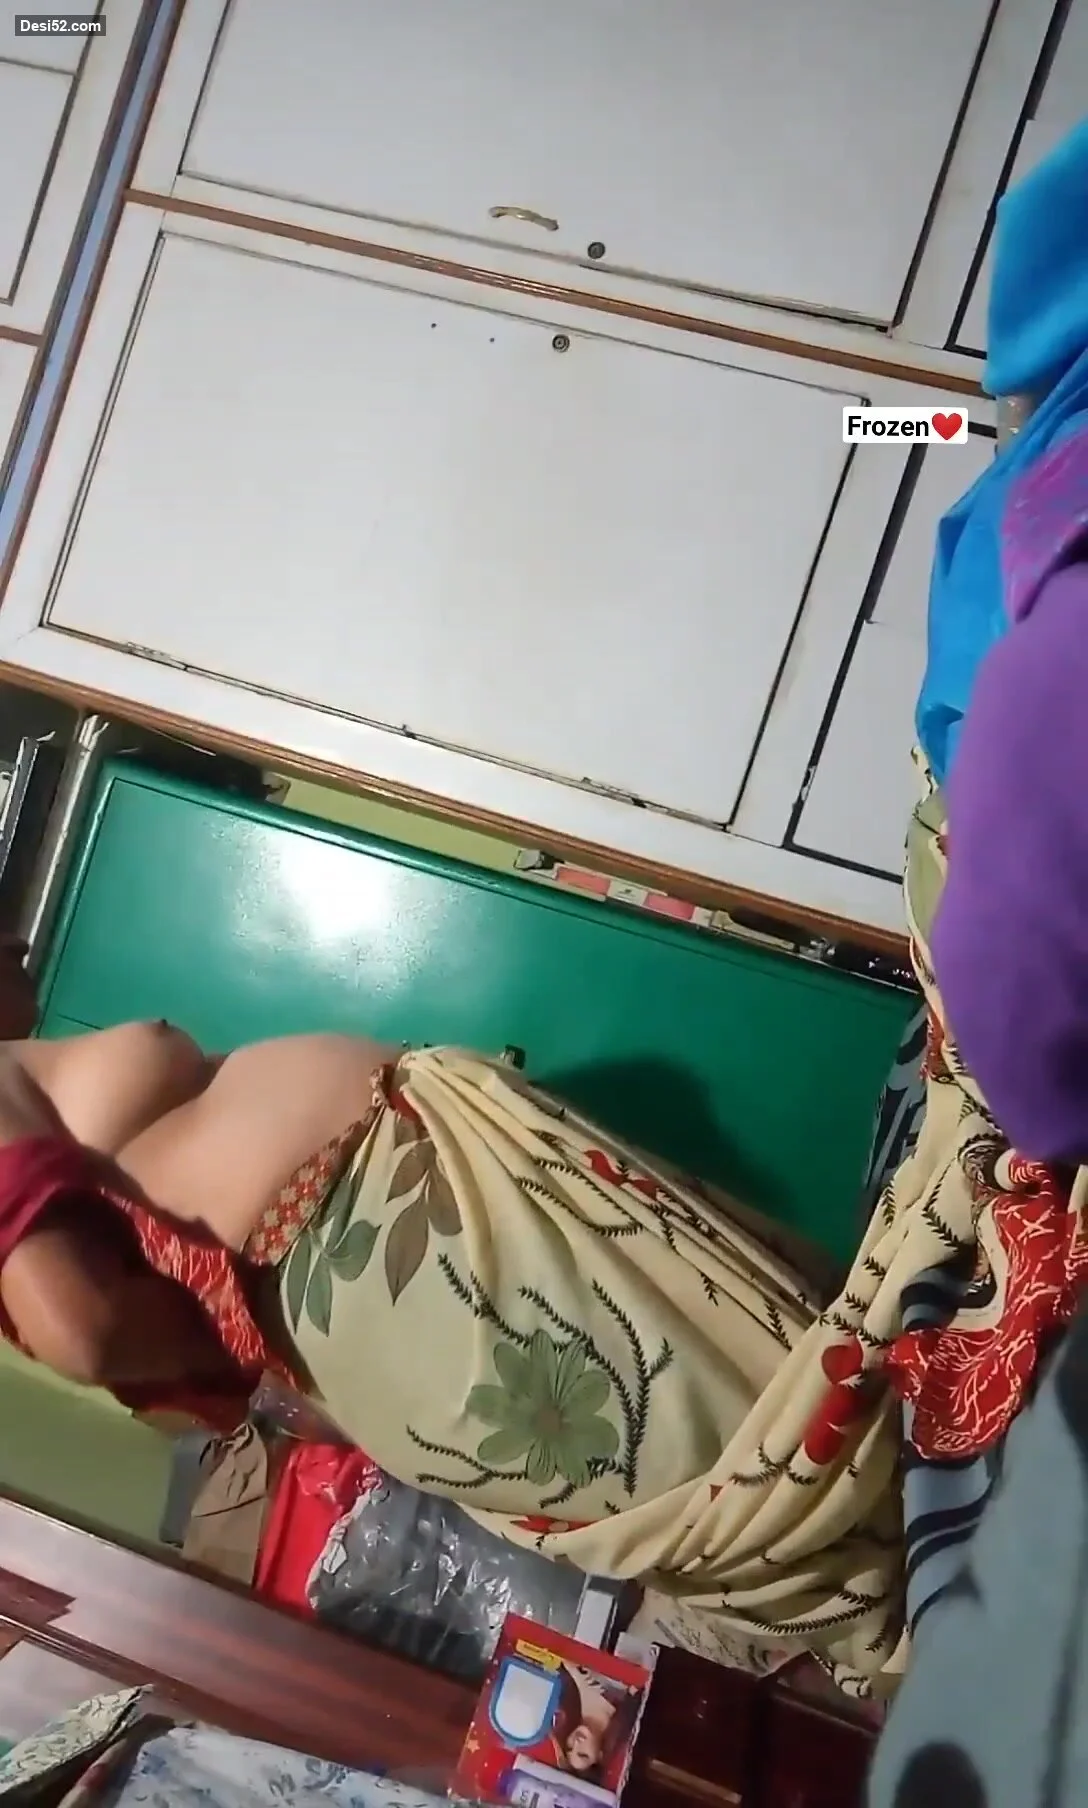 Desi aunti caught on hidden camera - ThisVid.com